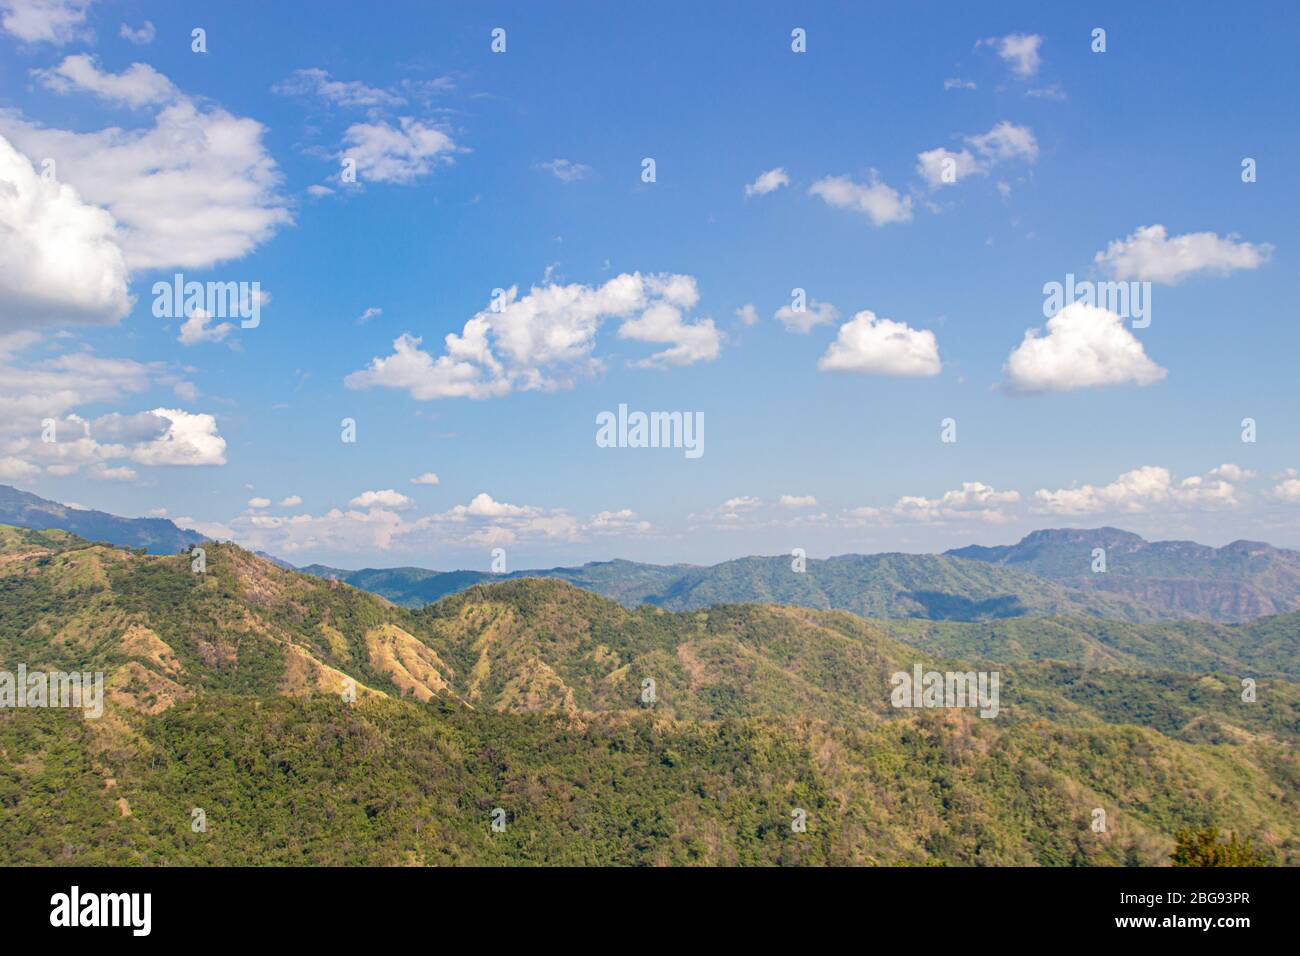 belle vue sur le paysage de montagne avec ciel clair Banque D'Images